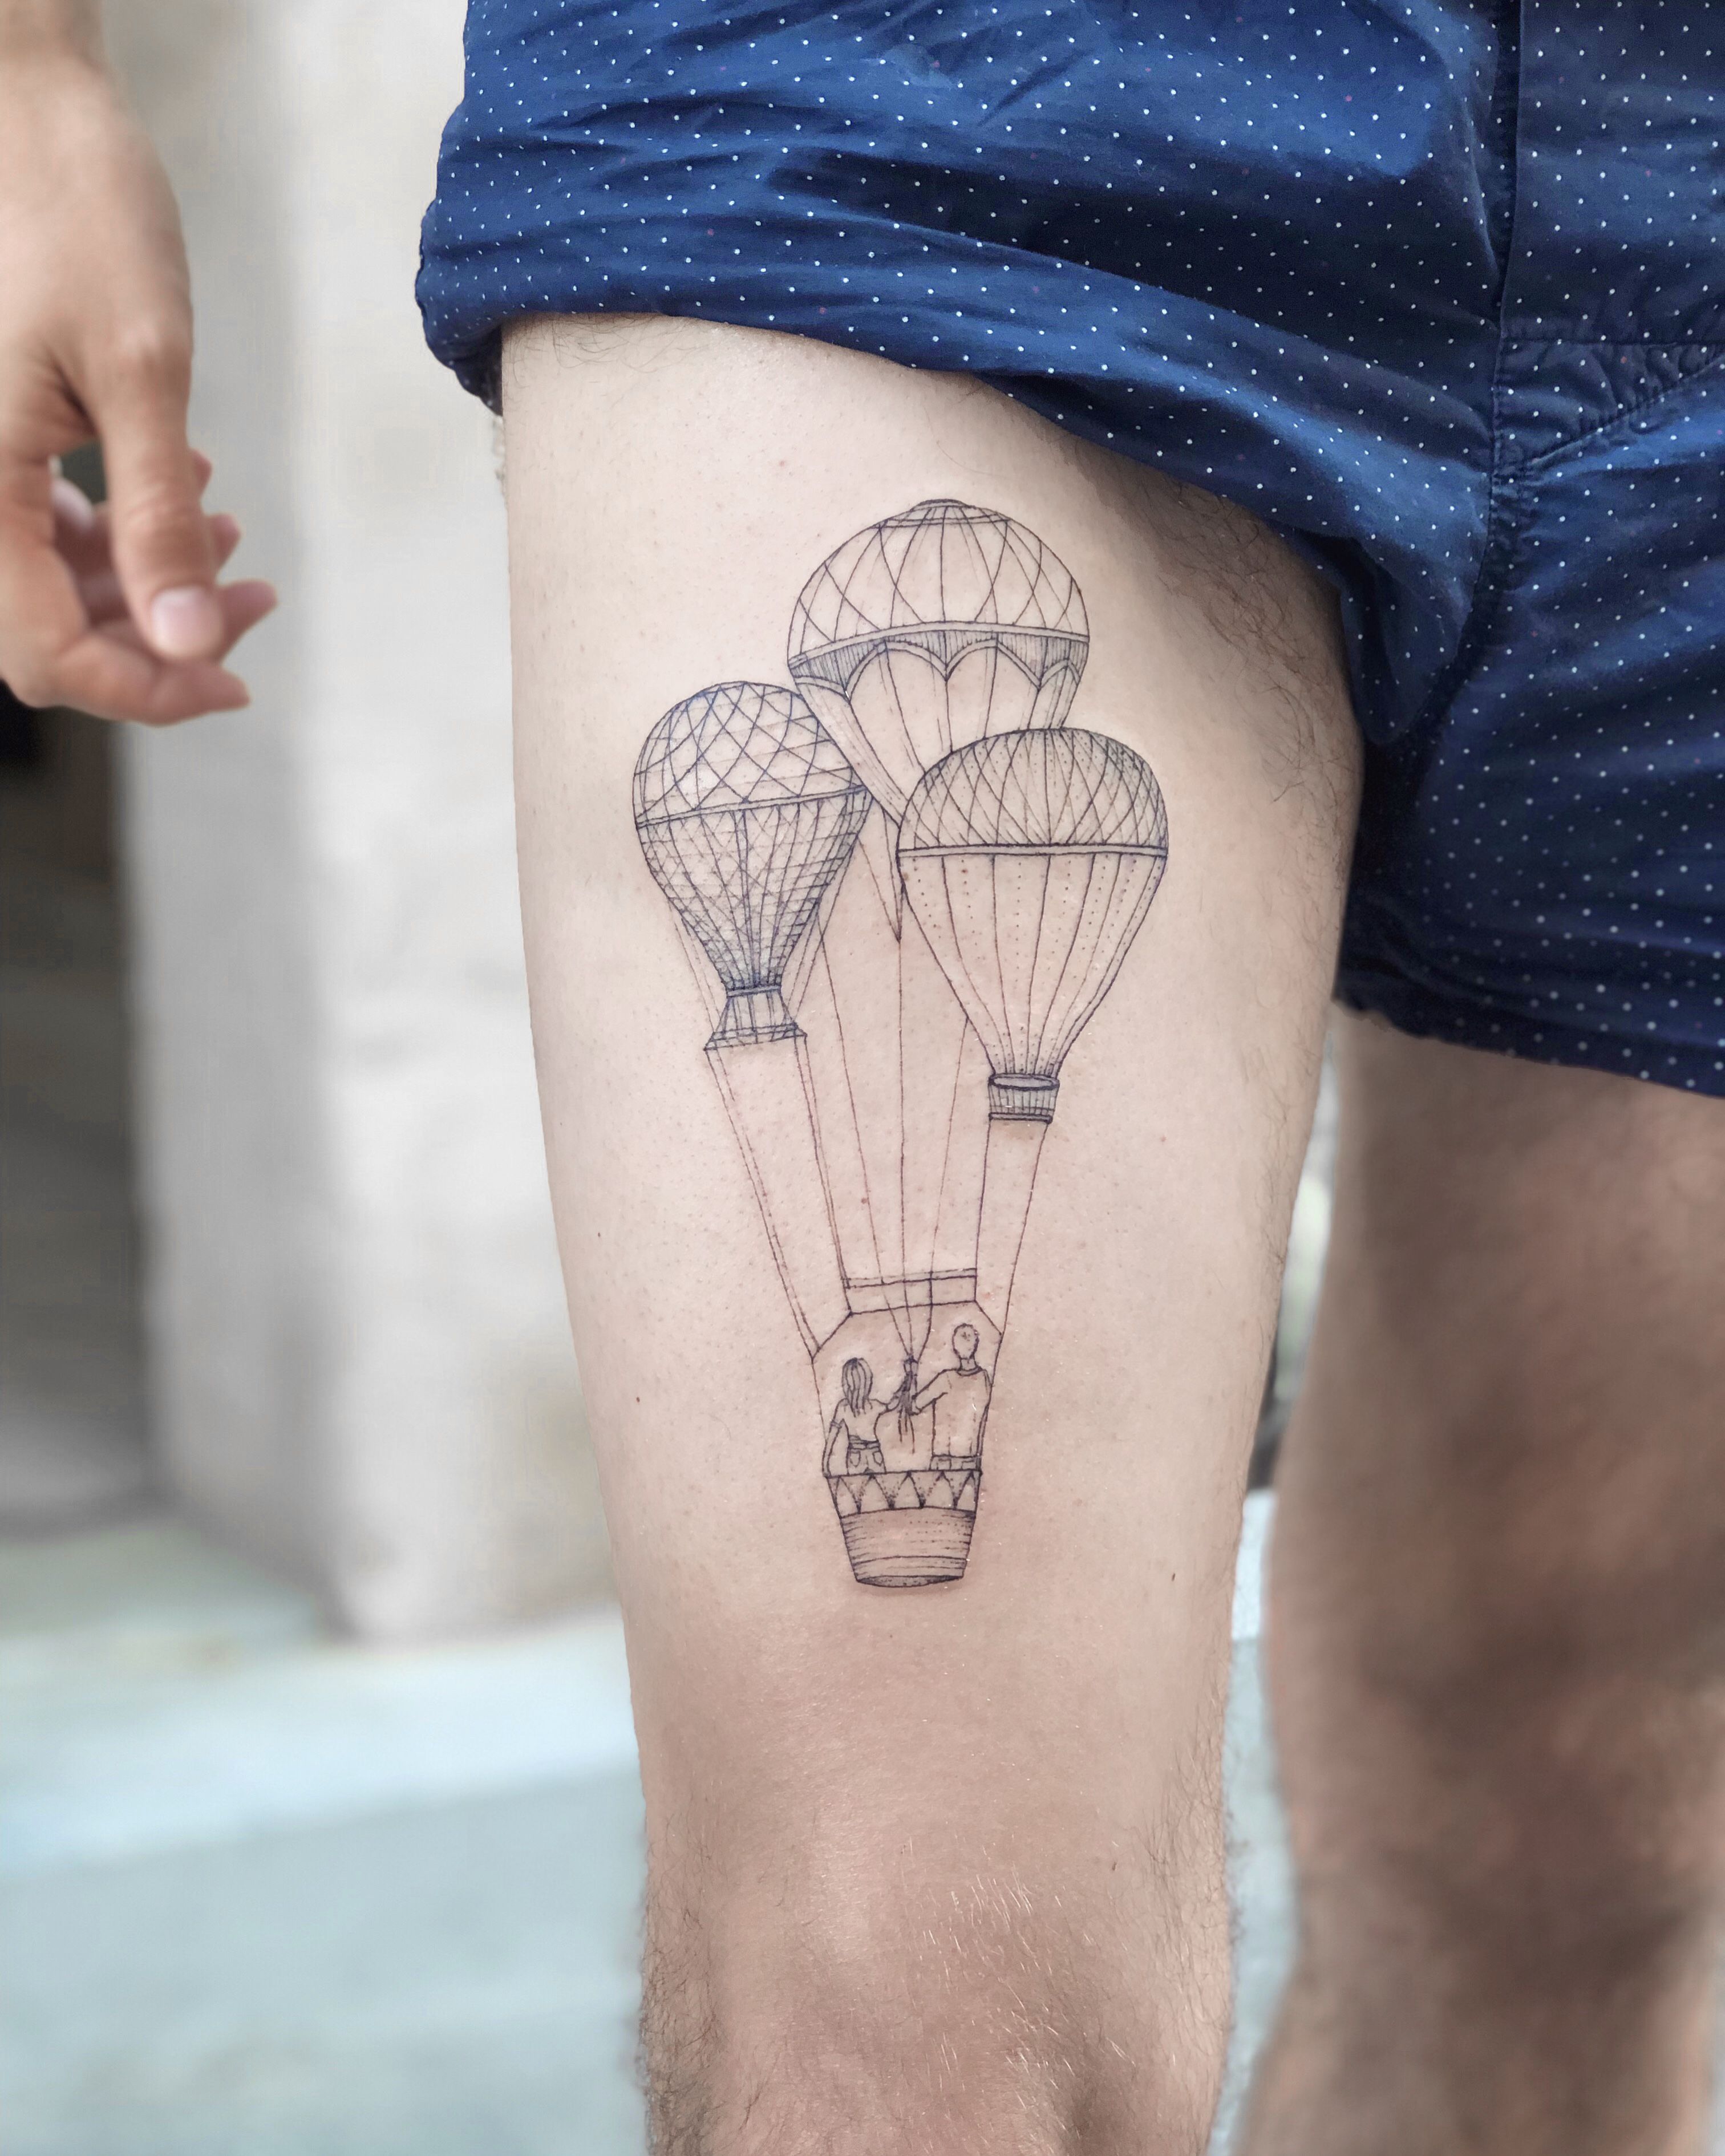 Balloon tattoo - Jay freestyle by JayFreestyle on DeviantArt